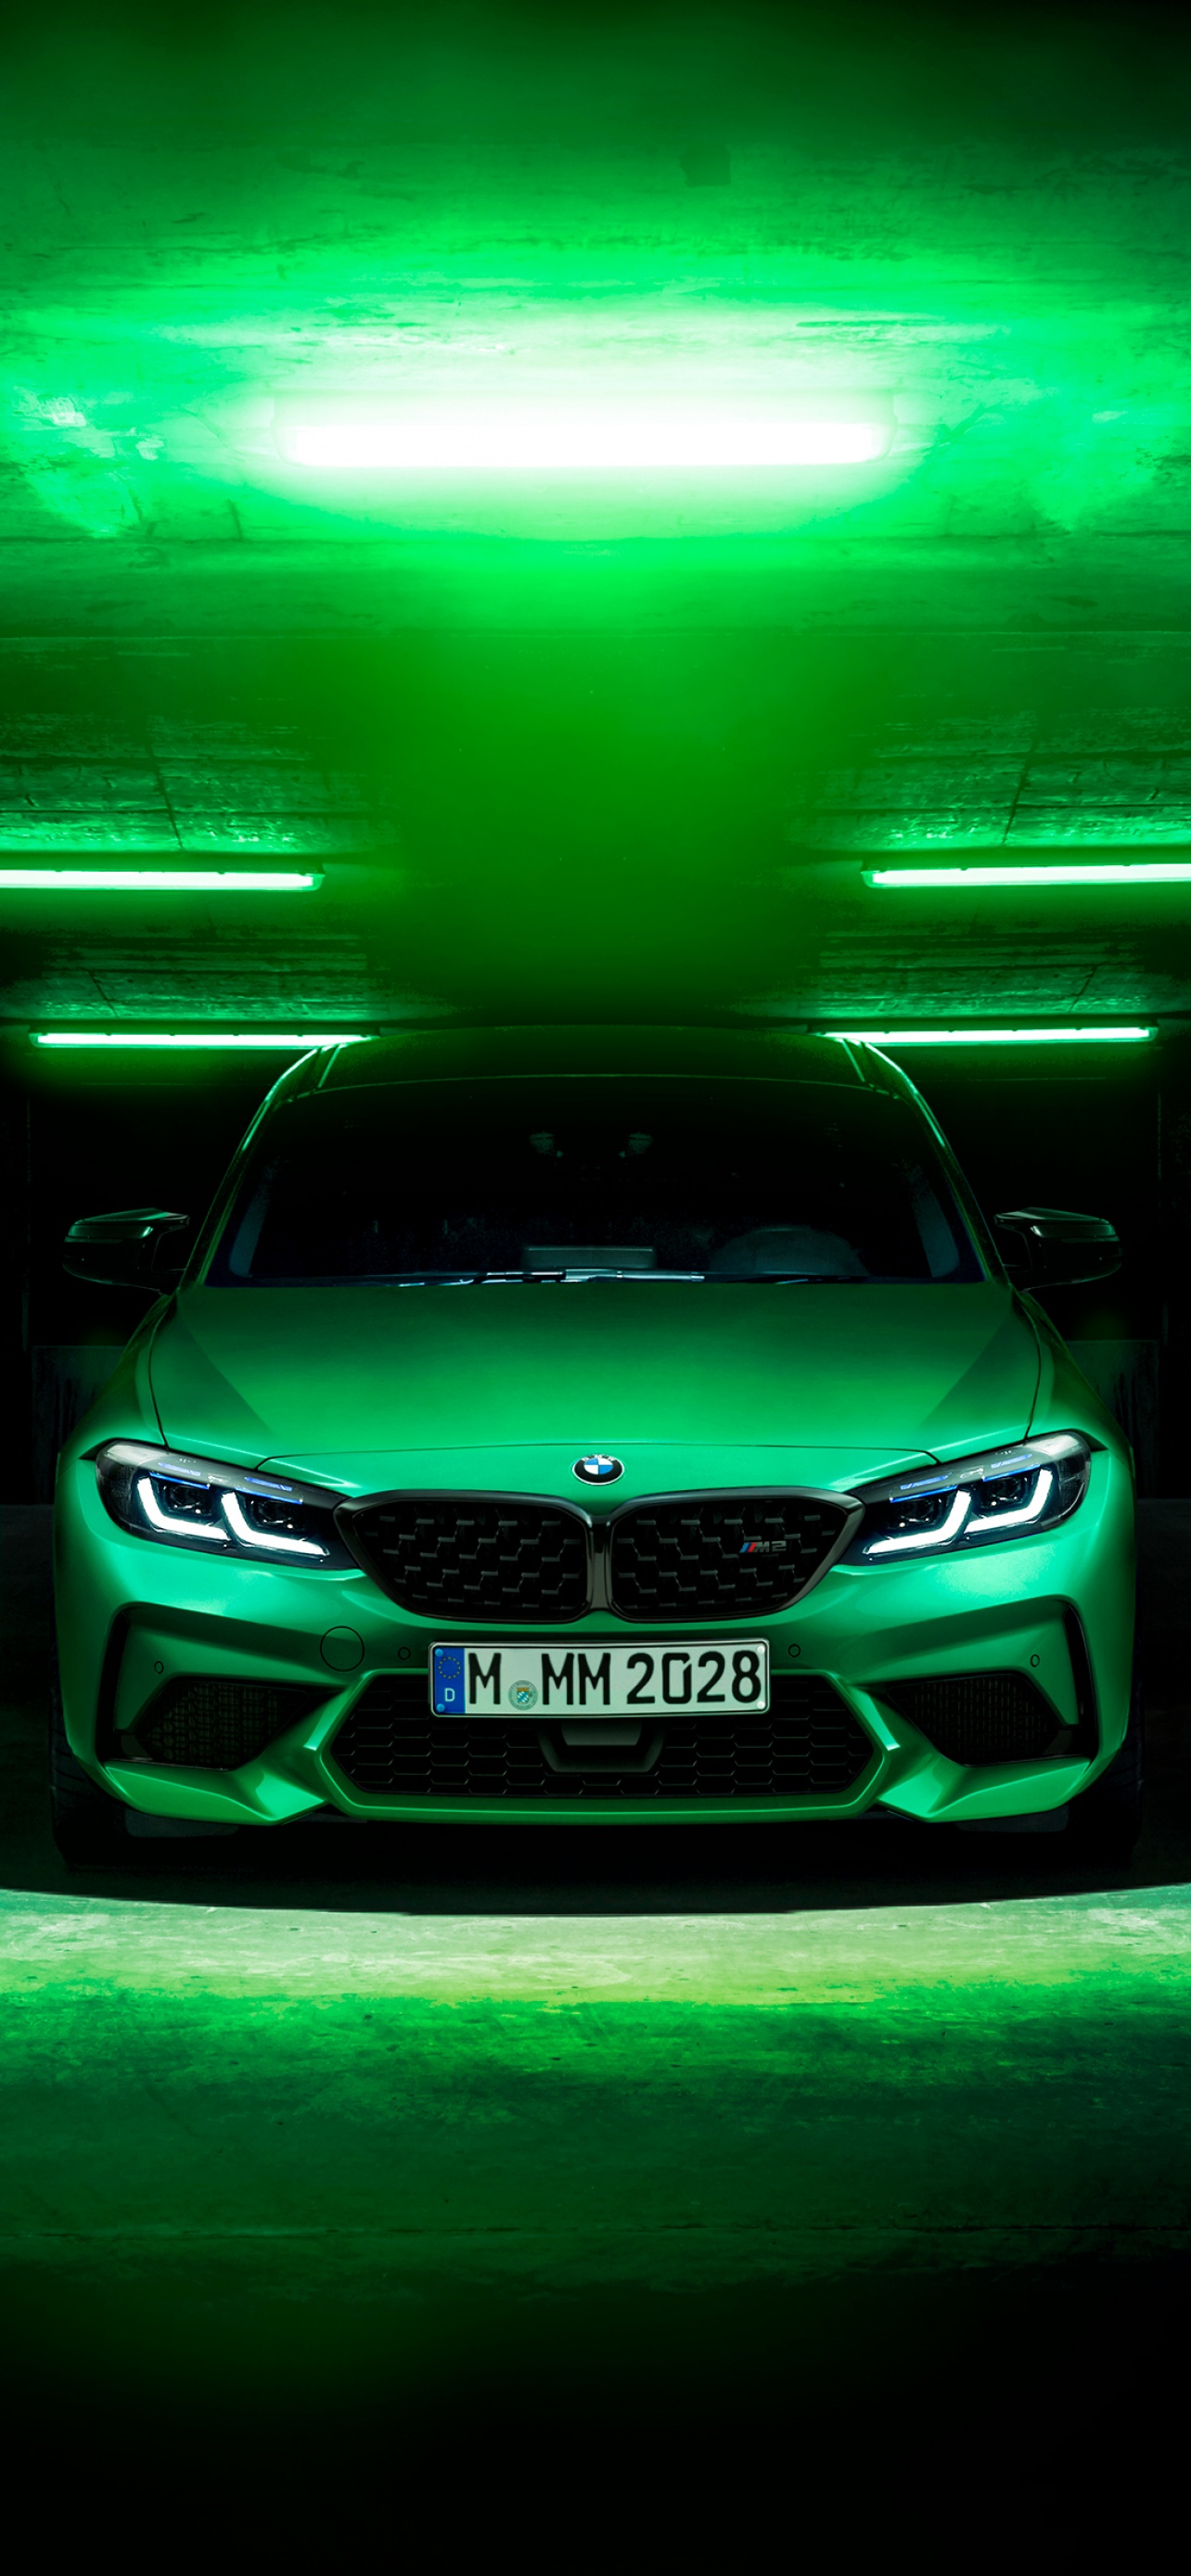 Với hình ảnh của chiếc BMW M2 màu xanh lá cây đậm chất thể thao, bạn sẽ có cảm giác như đang nắm trong tay vũ khí hoàn hảo để chiến đấu trên đường đua. Hãy cùng chiêm ngưỡng và cảm nhận sức mạnh của chiếc xe này qua hình nền độc đáo. 